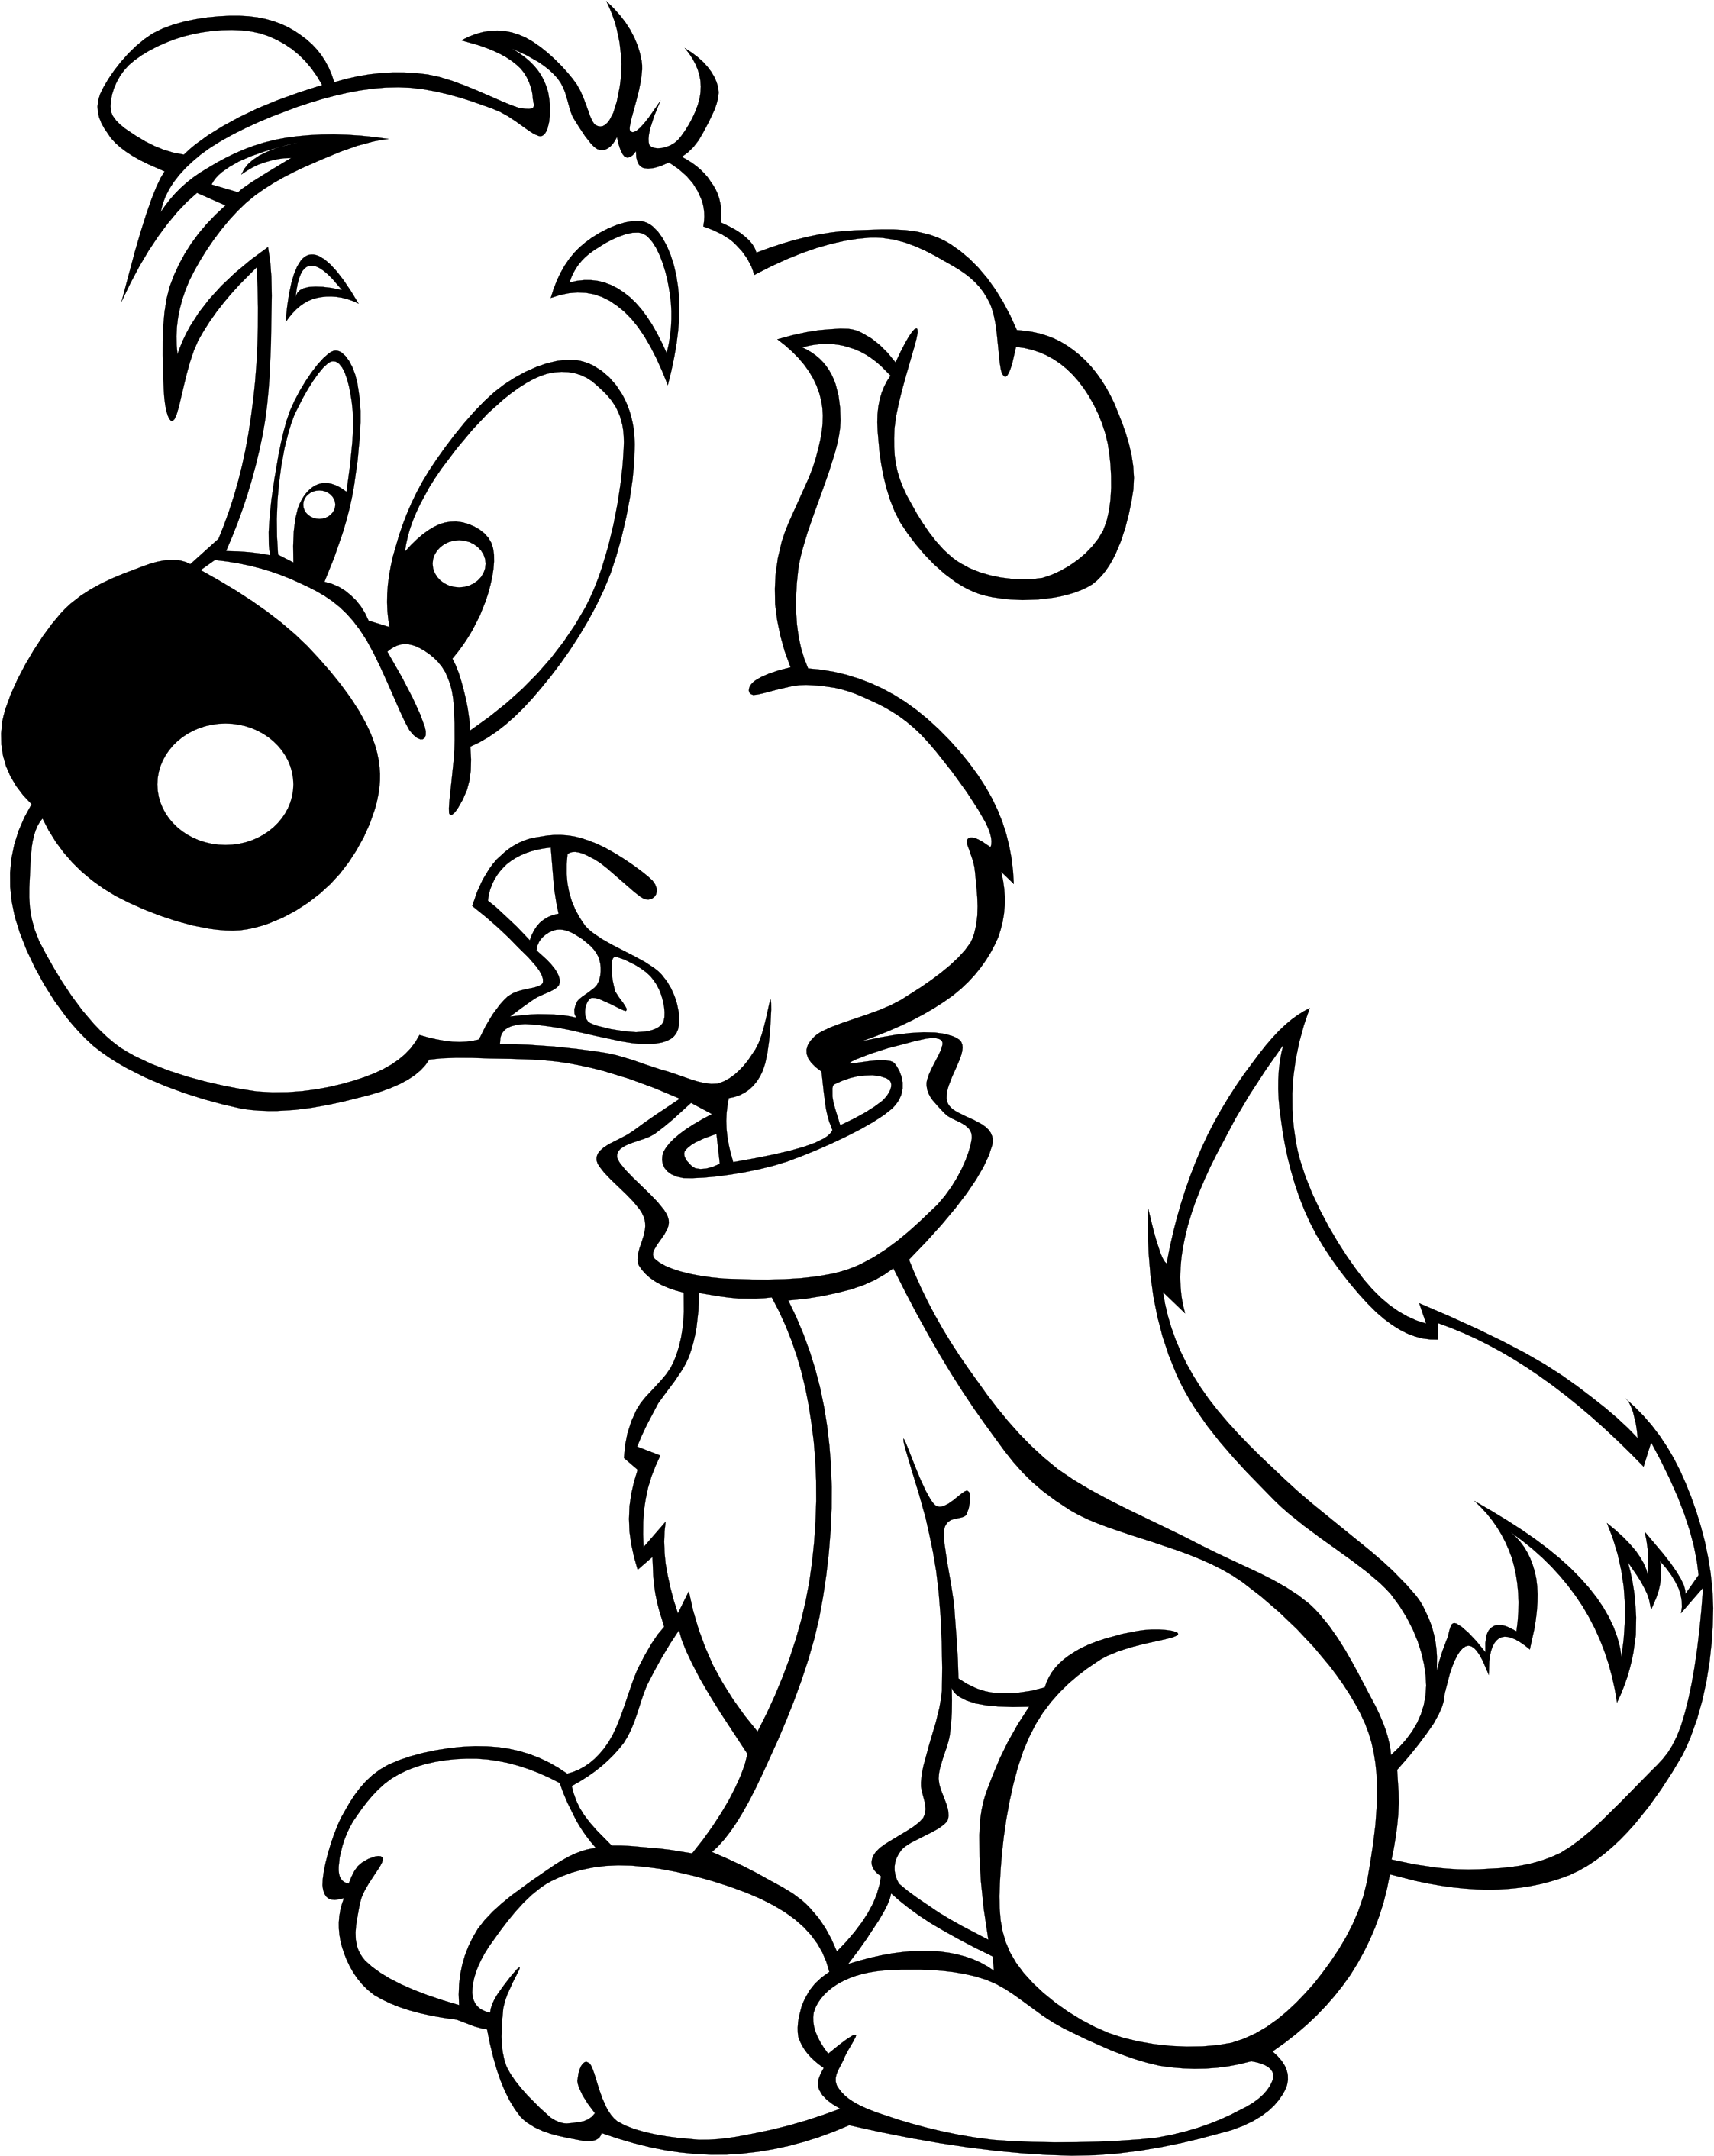 A Cartoon Dog With A Scarf